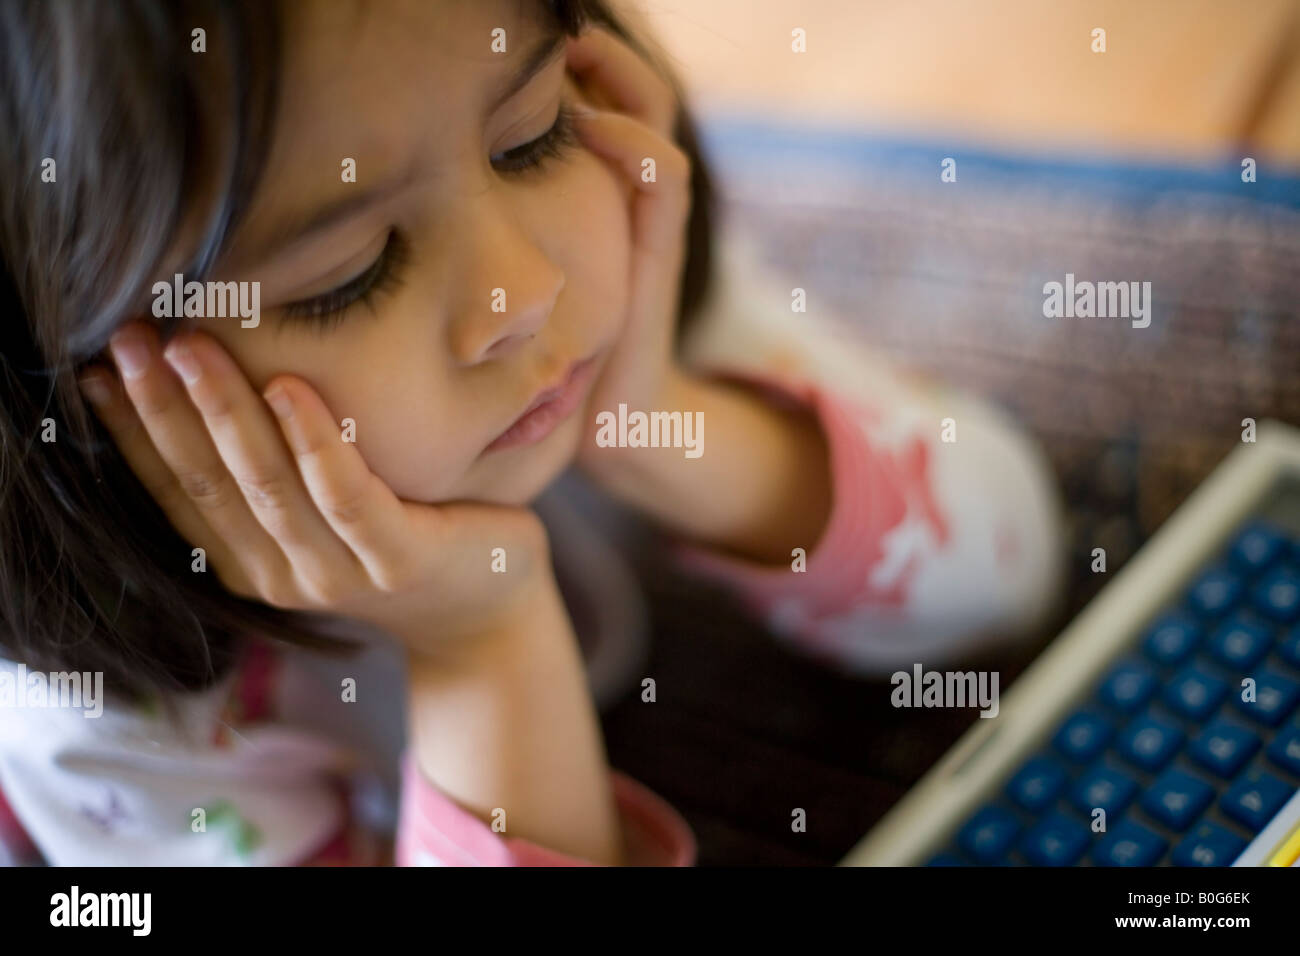 Cuatro años de edad, niña juega con su ordenador portátil de juguete tumbado en el suelo, la cabeza entre las manos Foto de stock